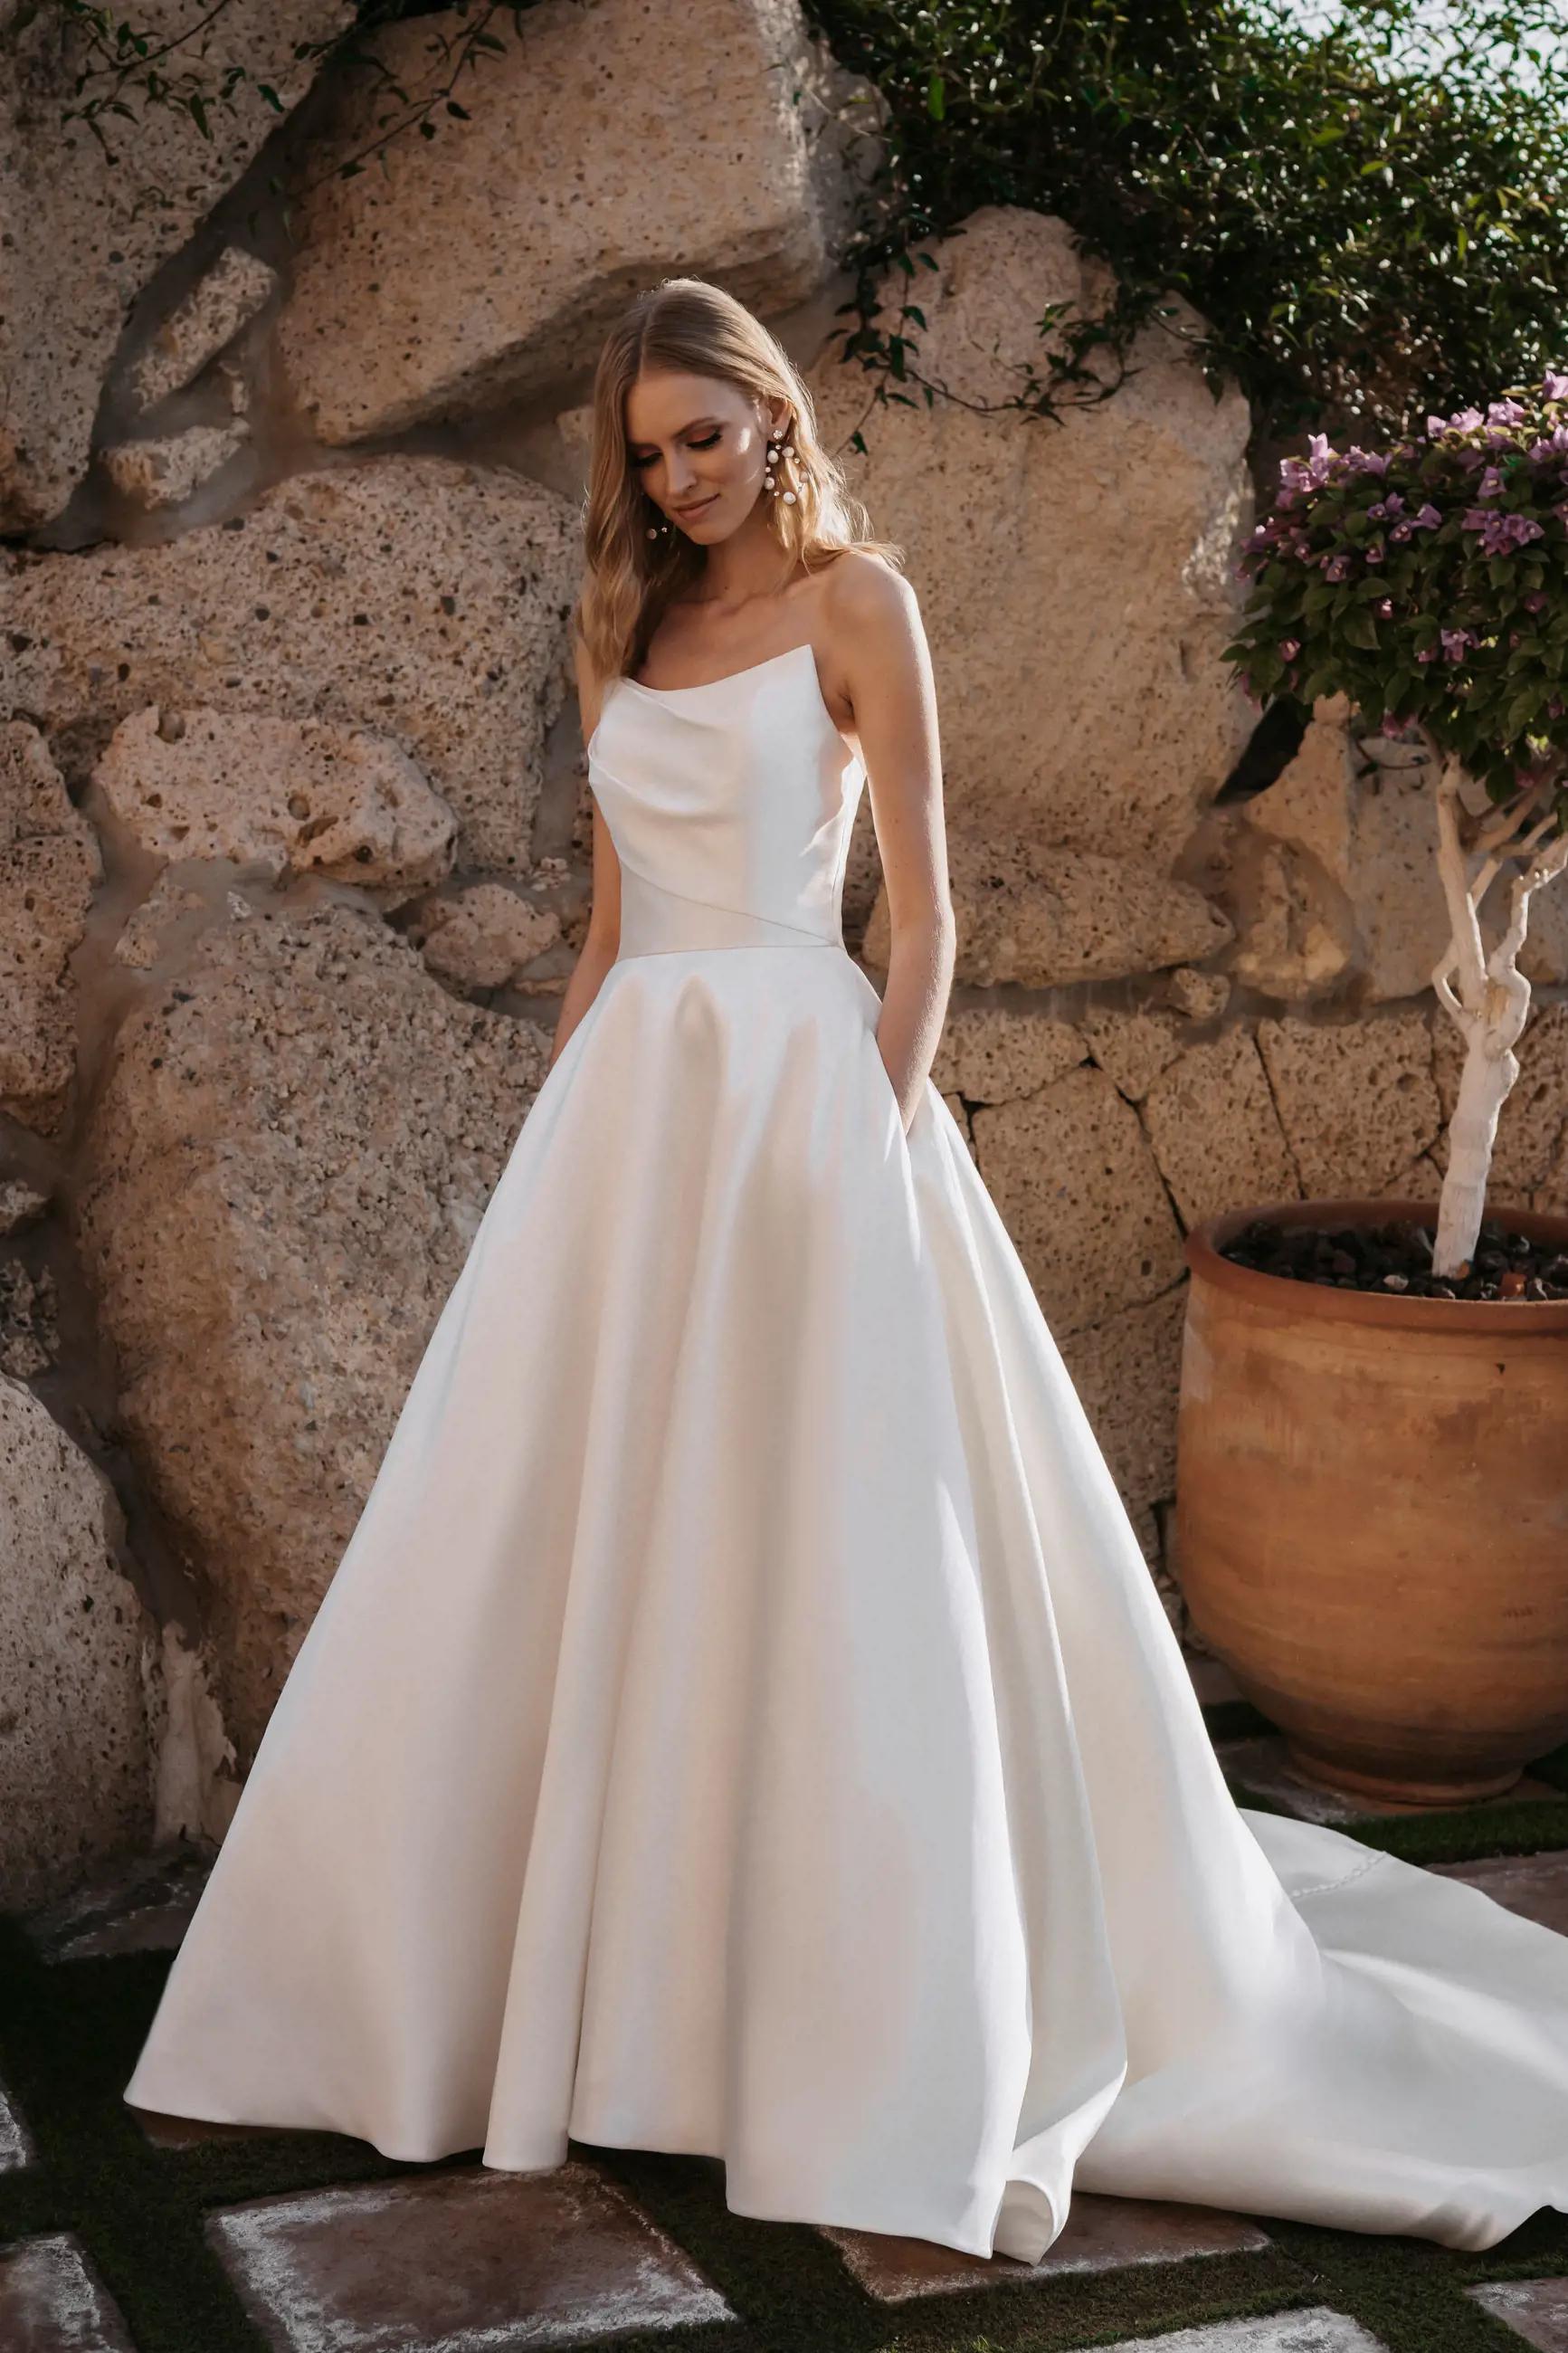 Bride in Allure Bridals Gown